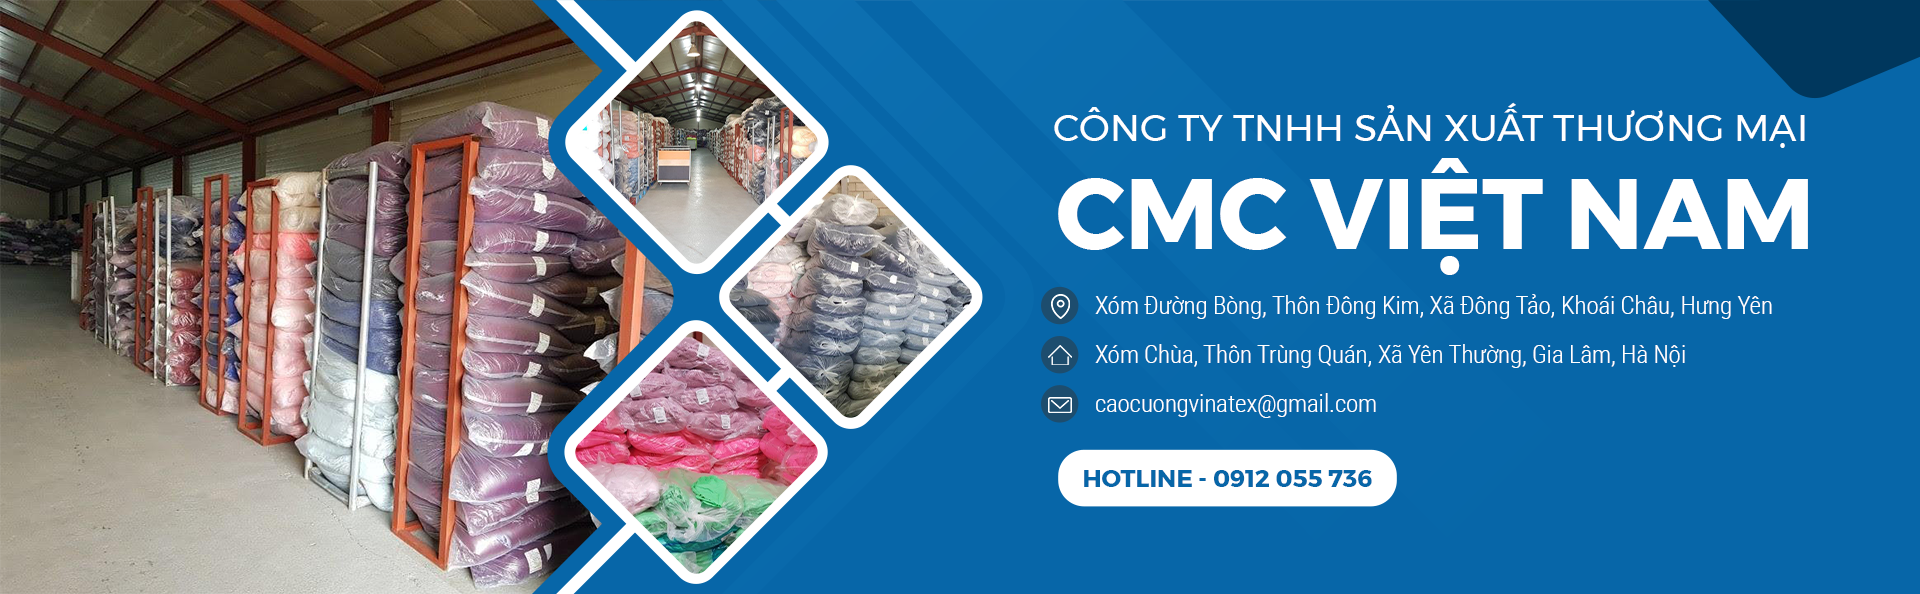 Công ty TNHH sản xuất thương mại CMC Việt Nam